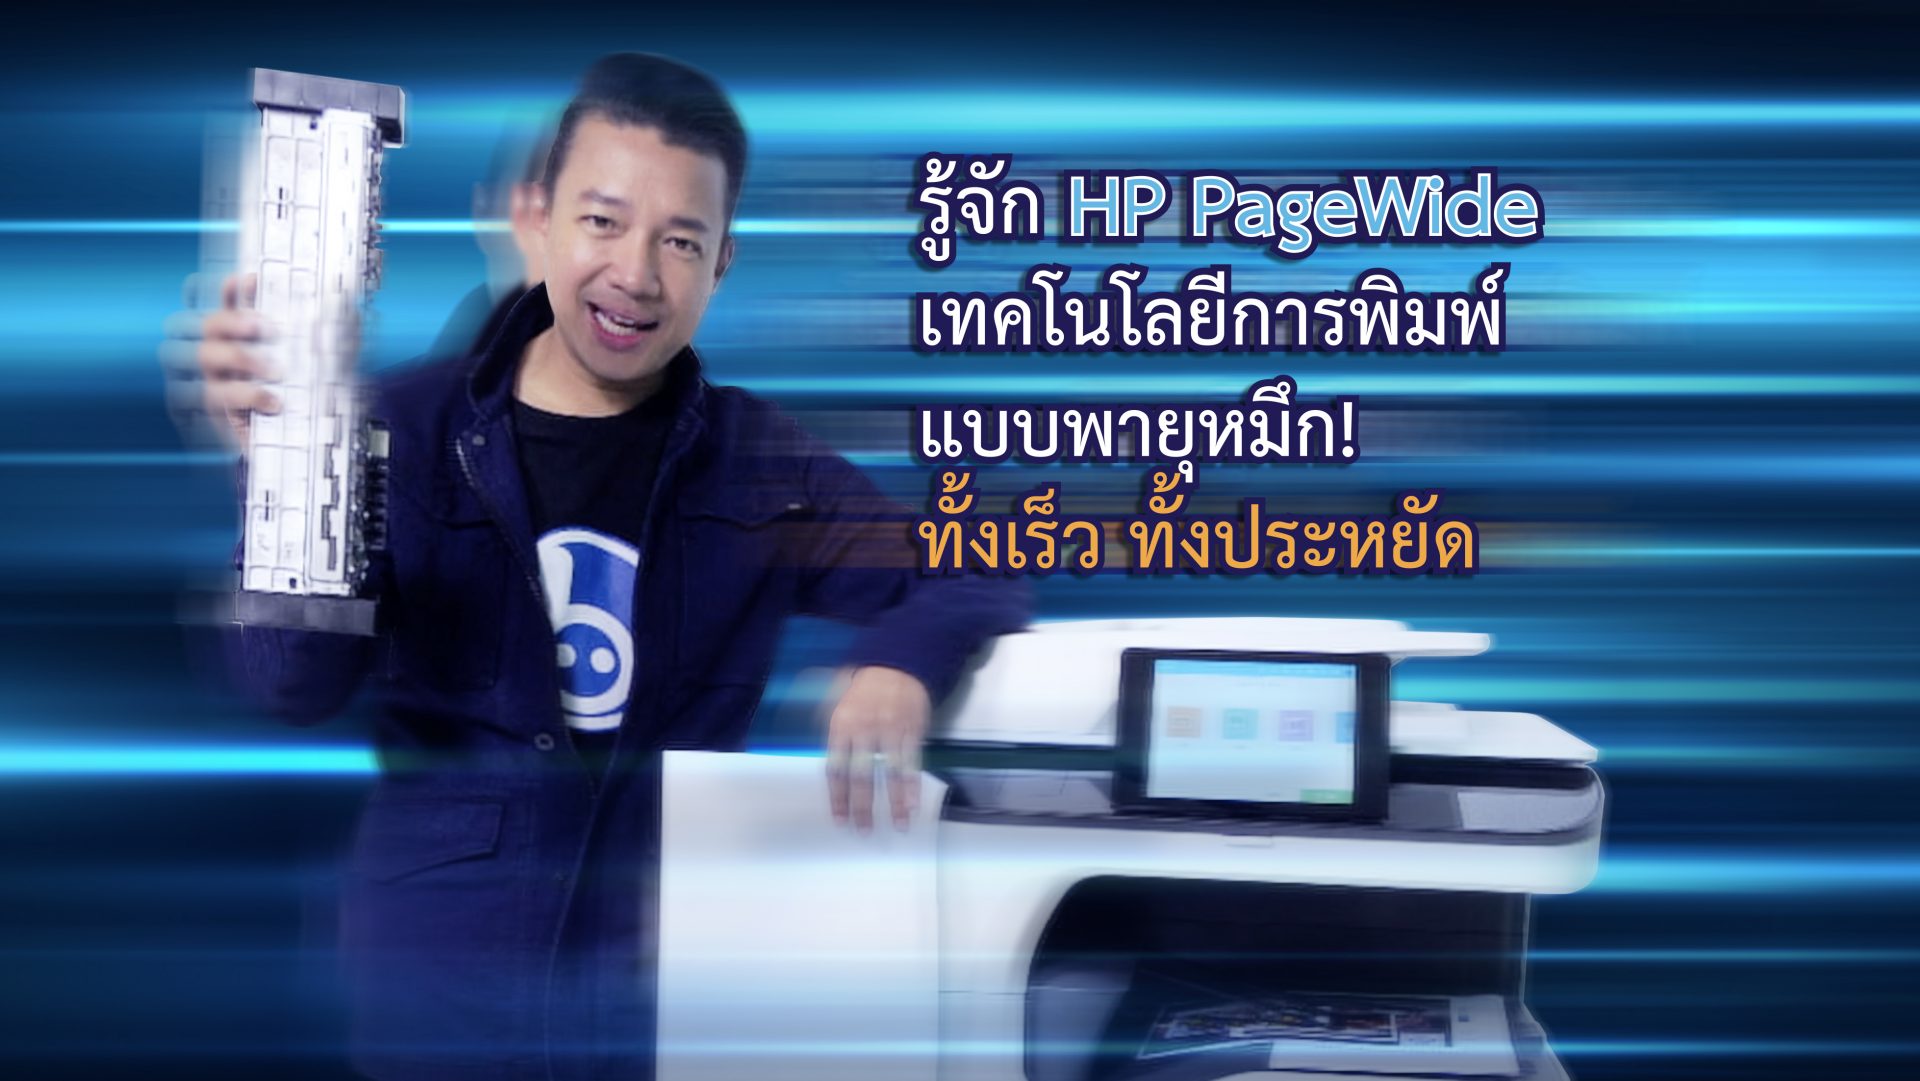 มารู้จัก #HP #PageWide เทคโนโลยีการพิมพ์แบบพายุหมึก!! ที่ทั้งเร็ว ทั้งประหยัด